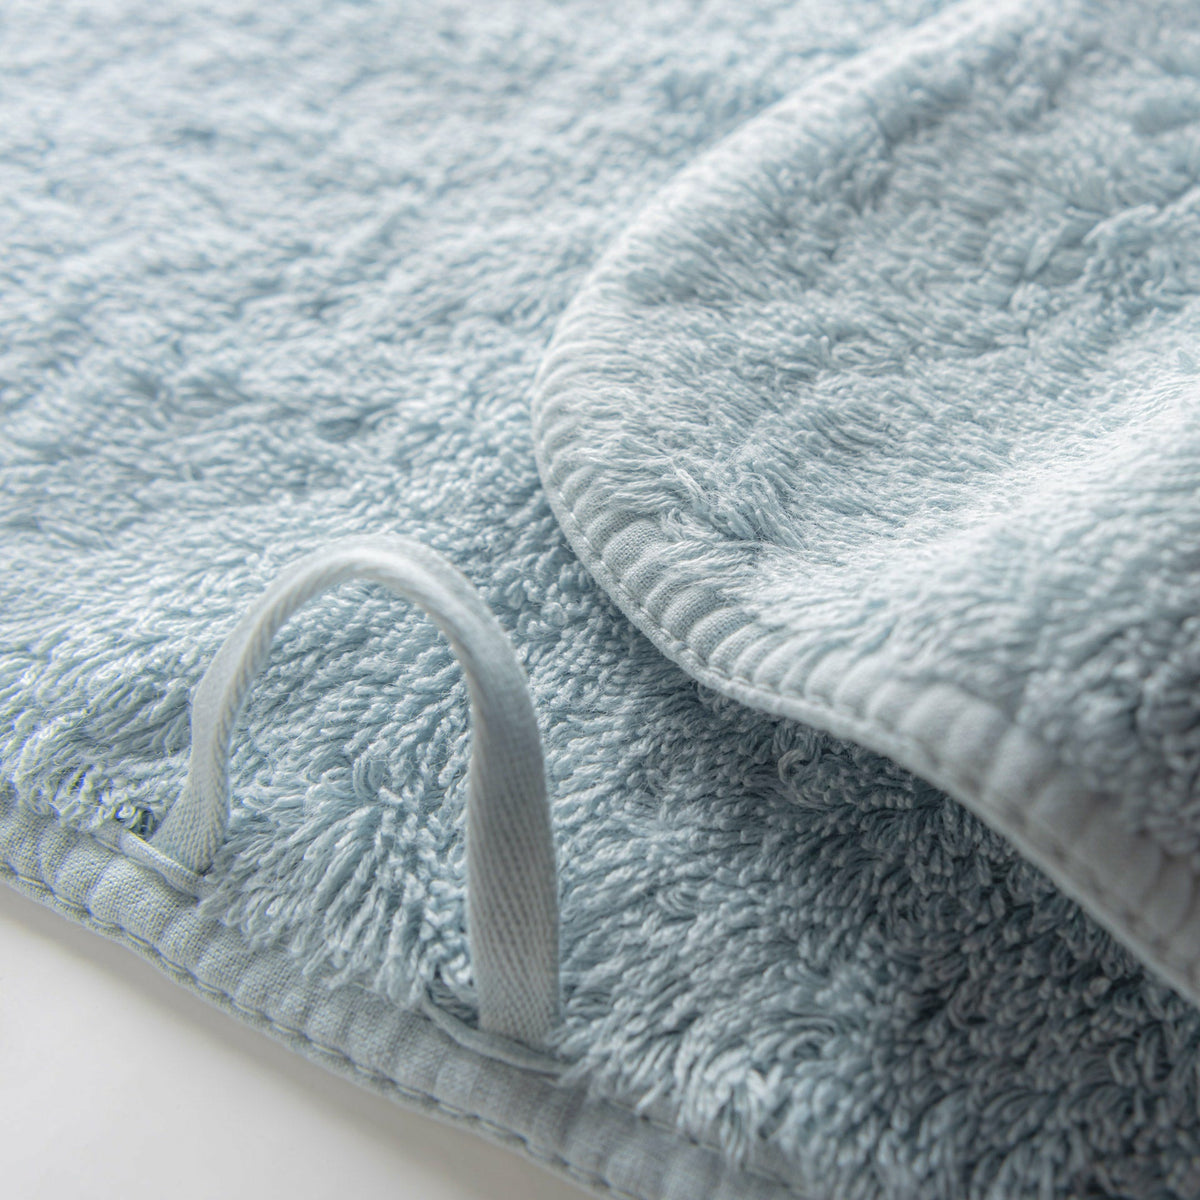 https://flandb.com/cdn/shop/products/Graccioza-Long-Double-Loop-Bath-Towels-Closeup-Sea-Mist_1200x.jpg?v=1704283890